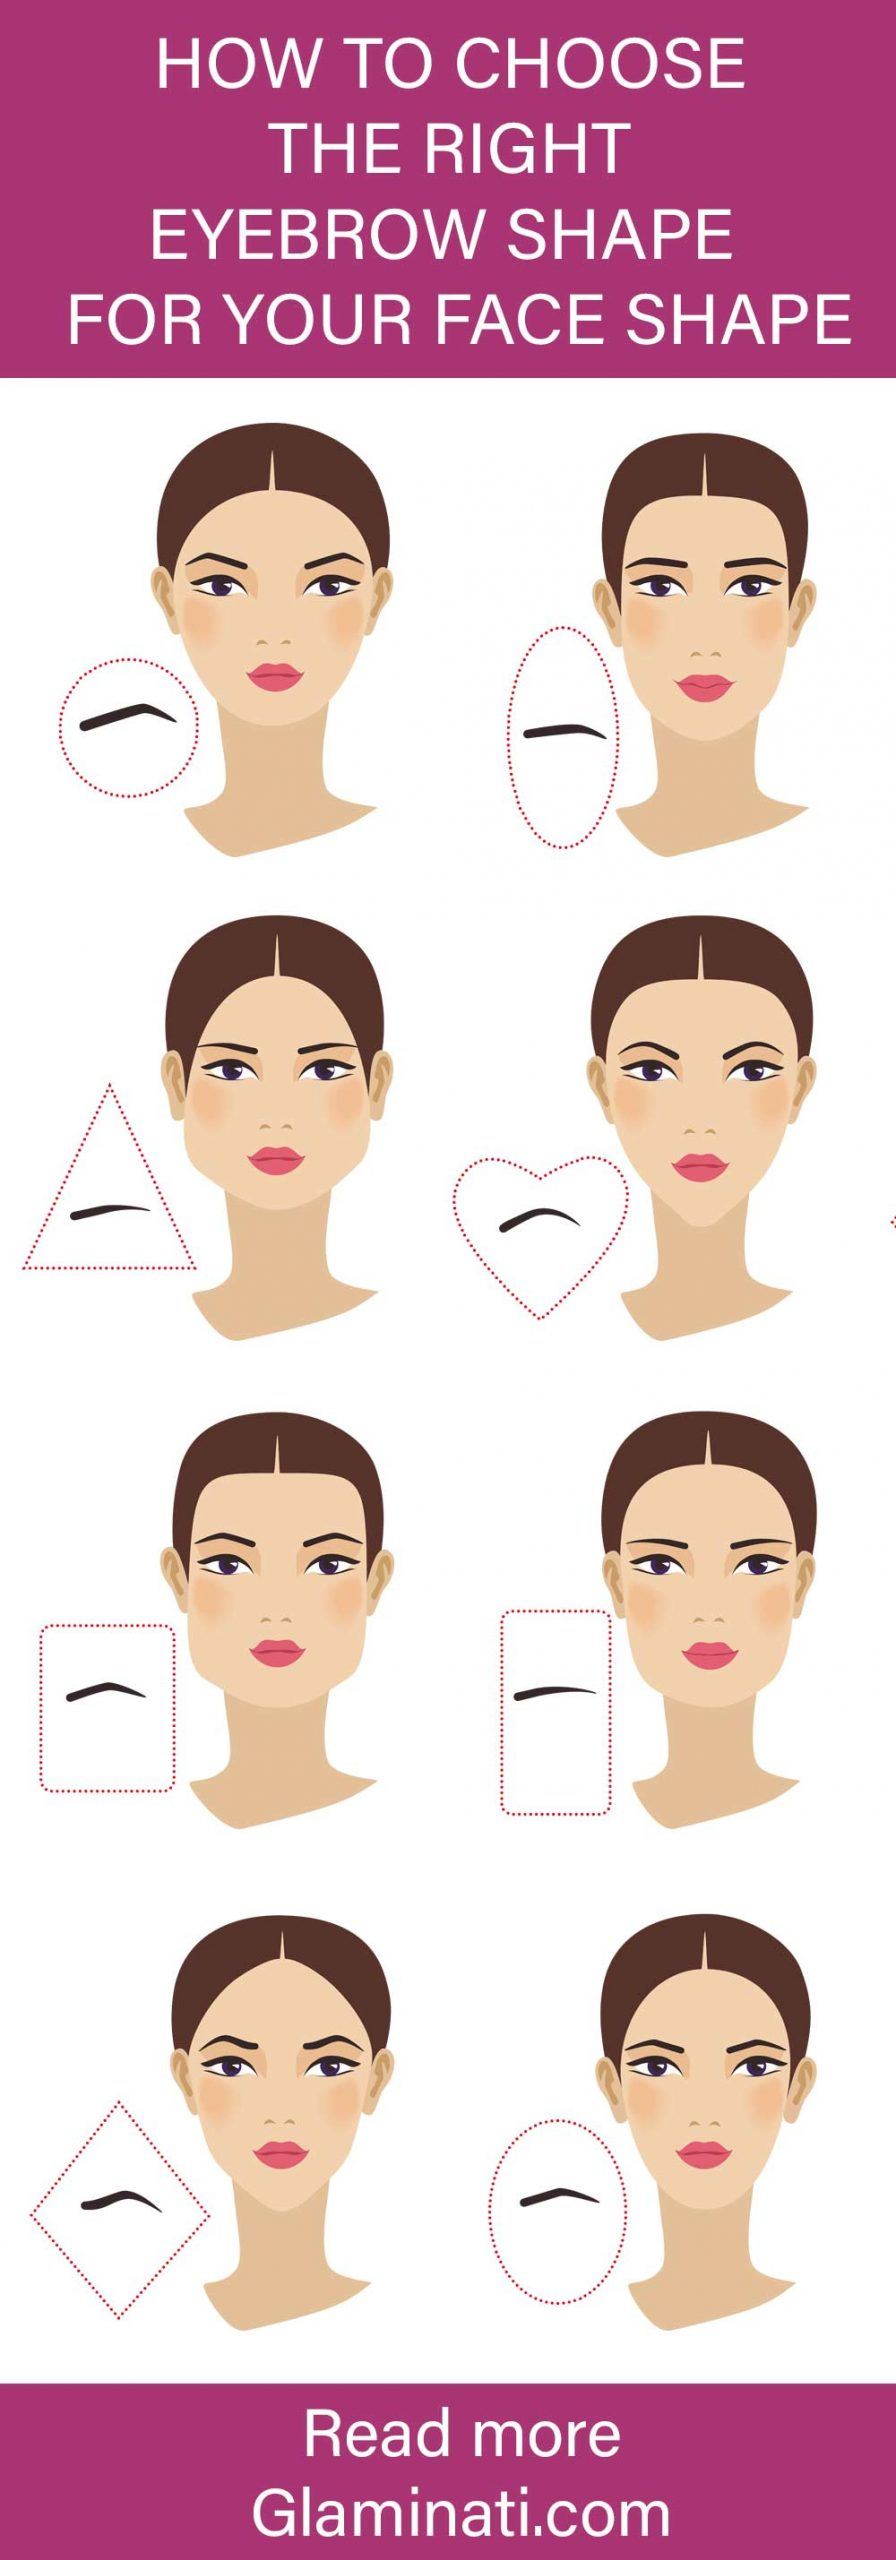 How to Choose Eyebrow Shape